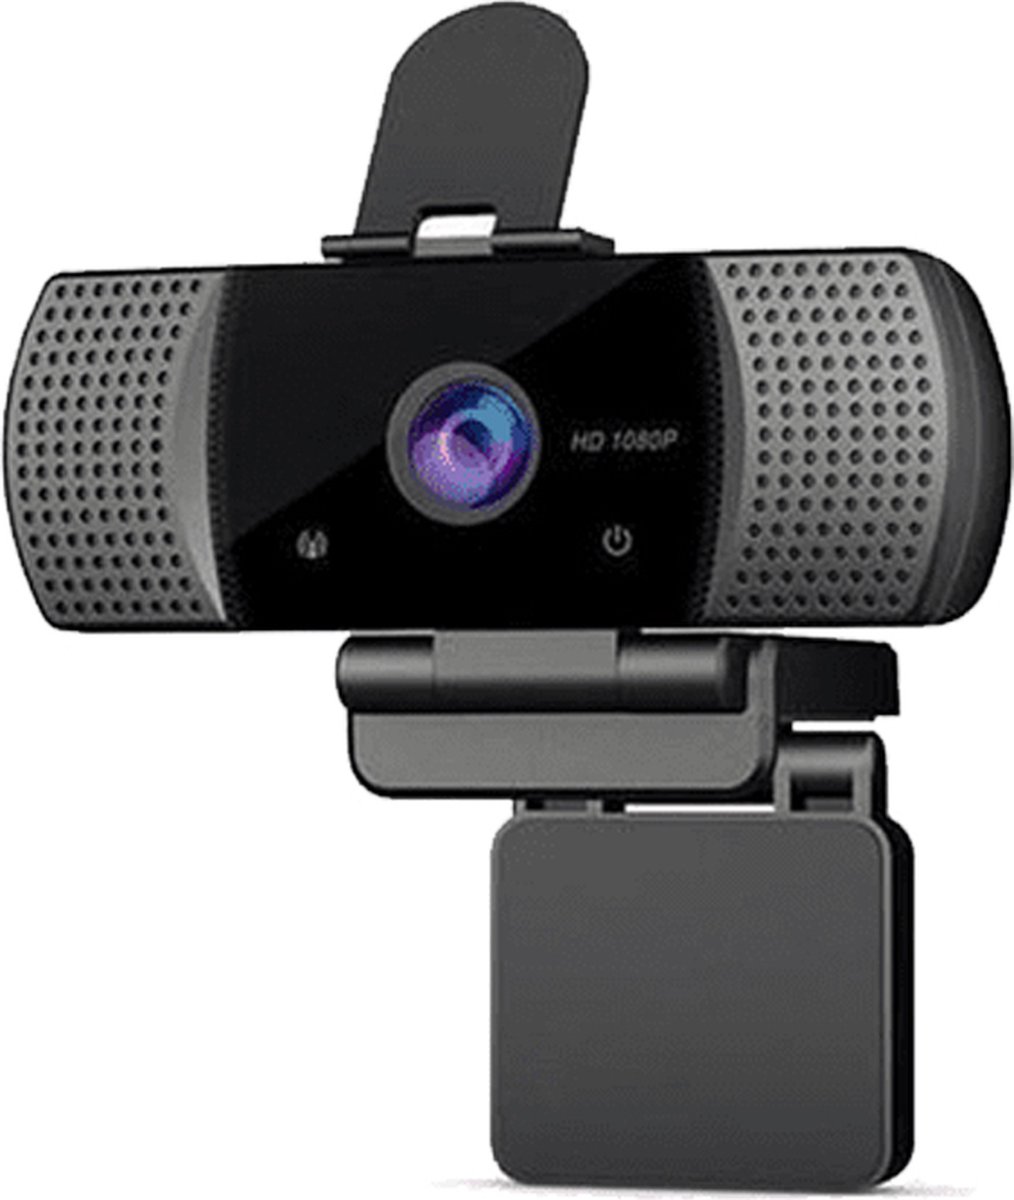 Elecpow Webcam F-HD 1080P - Usb Webcam USB2.0 + Statief